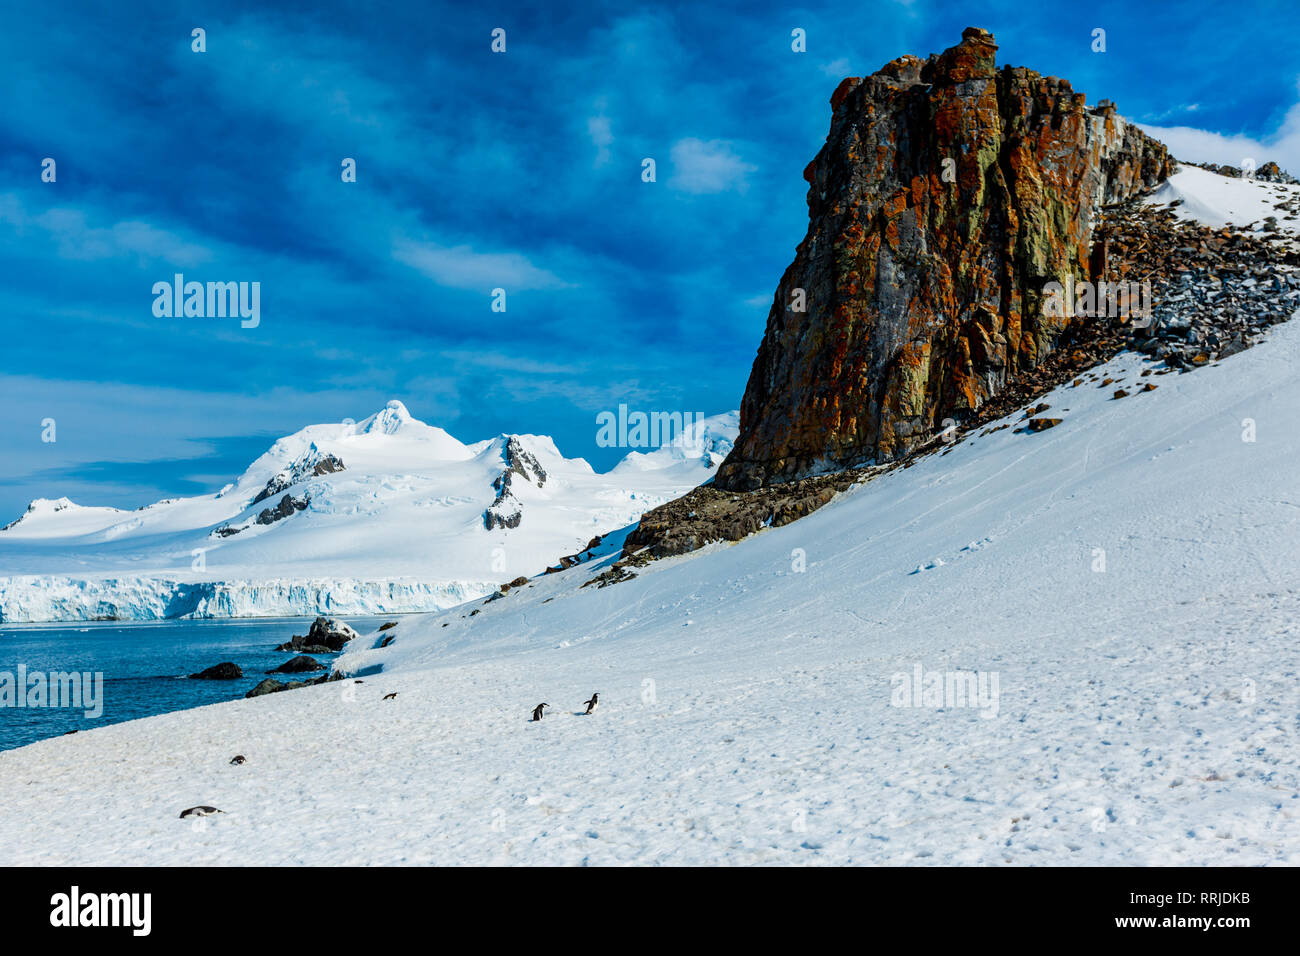 Vue panoramique sur la glace des glaciers et des icebergs dans l'Antarctique, régions polaires Banque D'Images